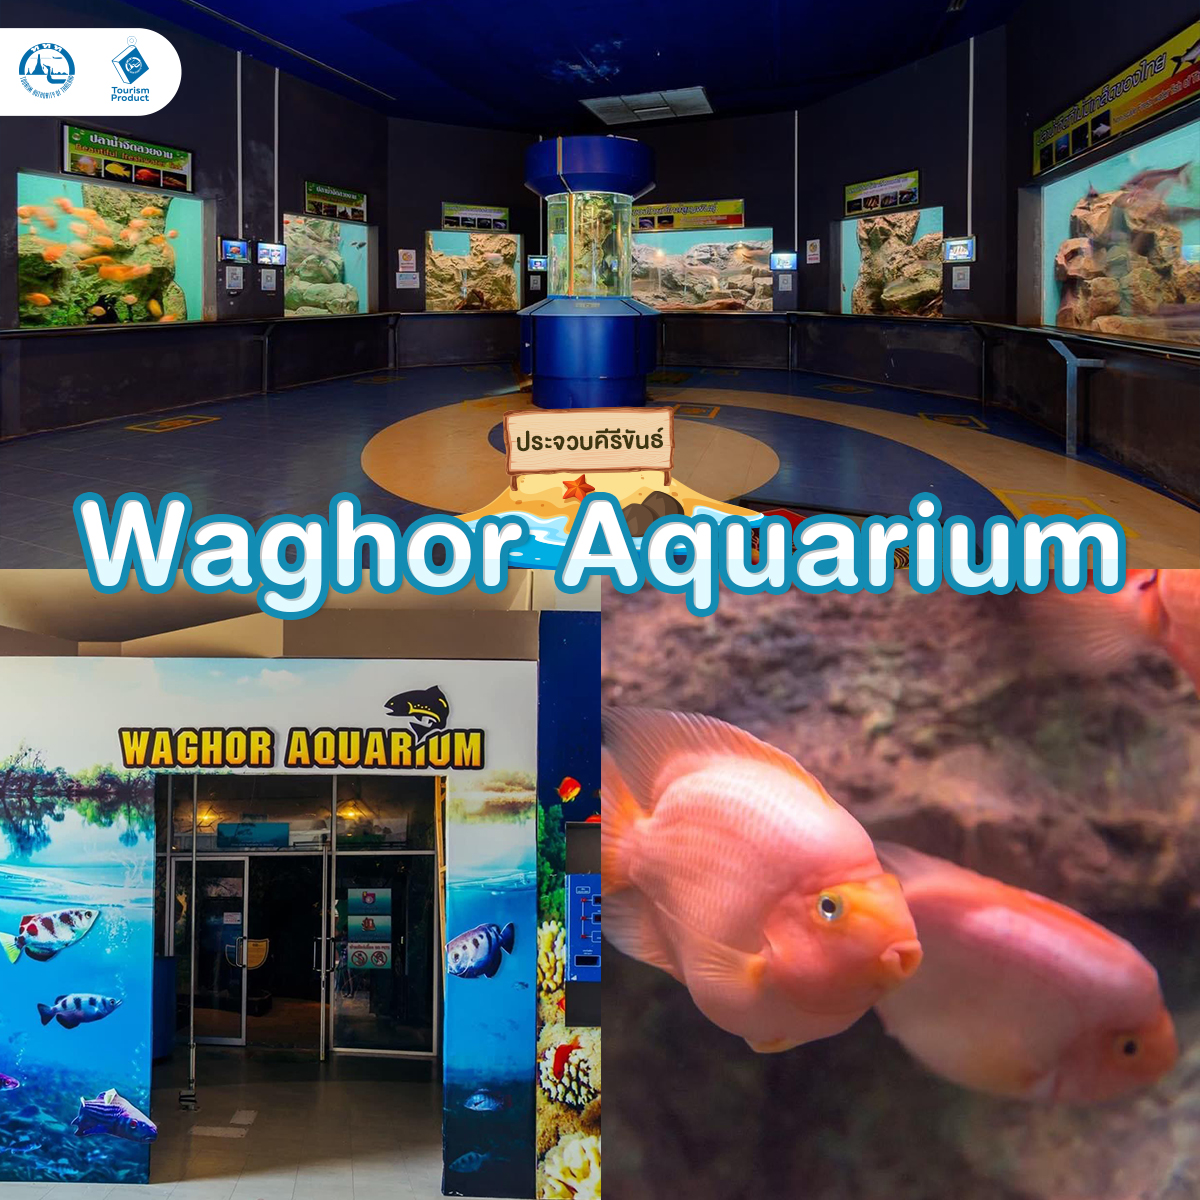 ท่องโลกใต้ทะเล 6 อควาเรียม มหัศจรรย์ใต้น้ำ Waghor Aquarium